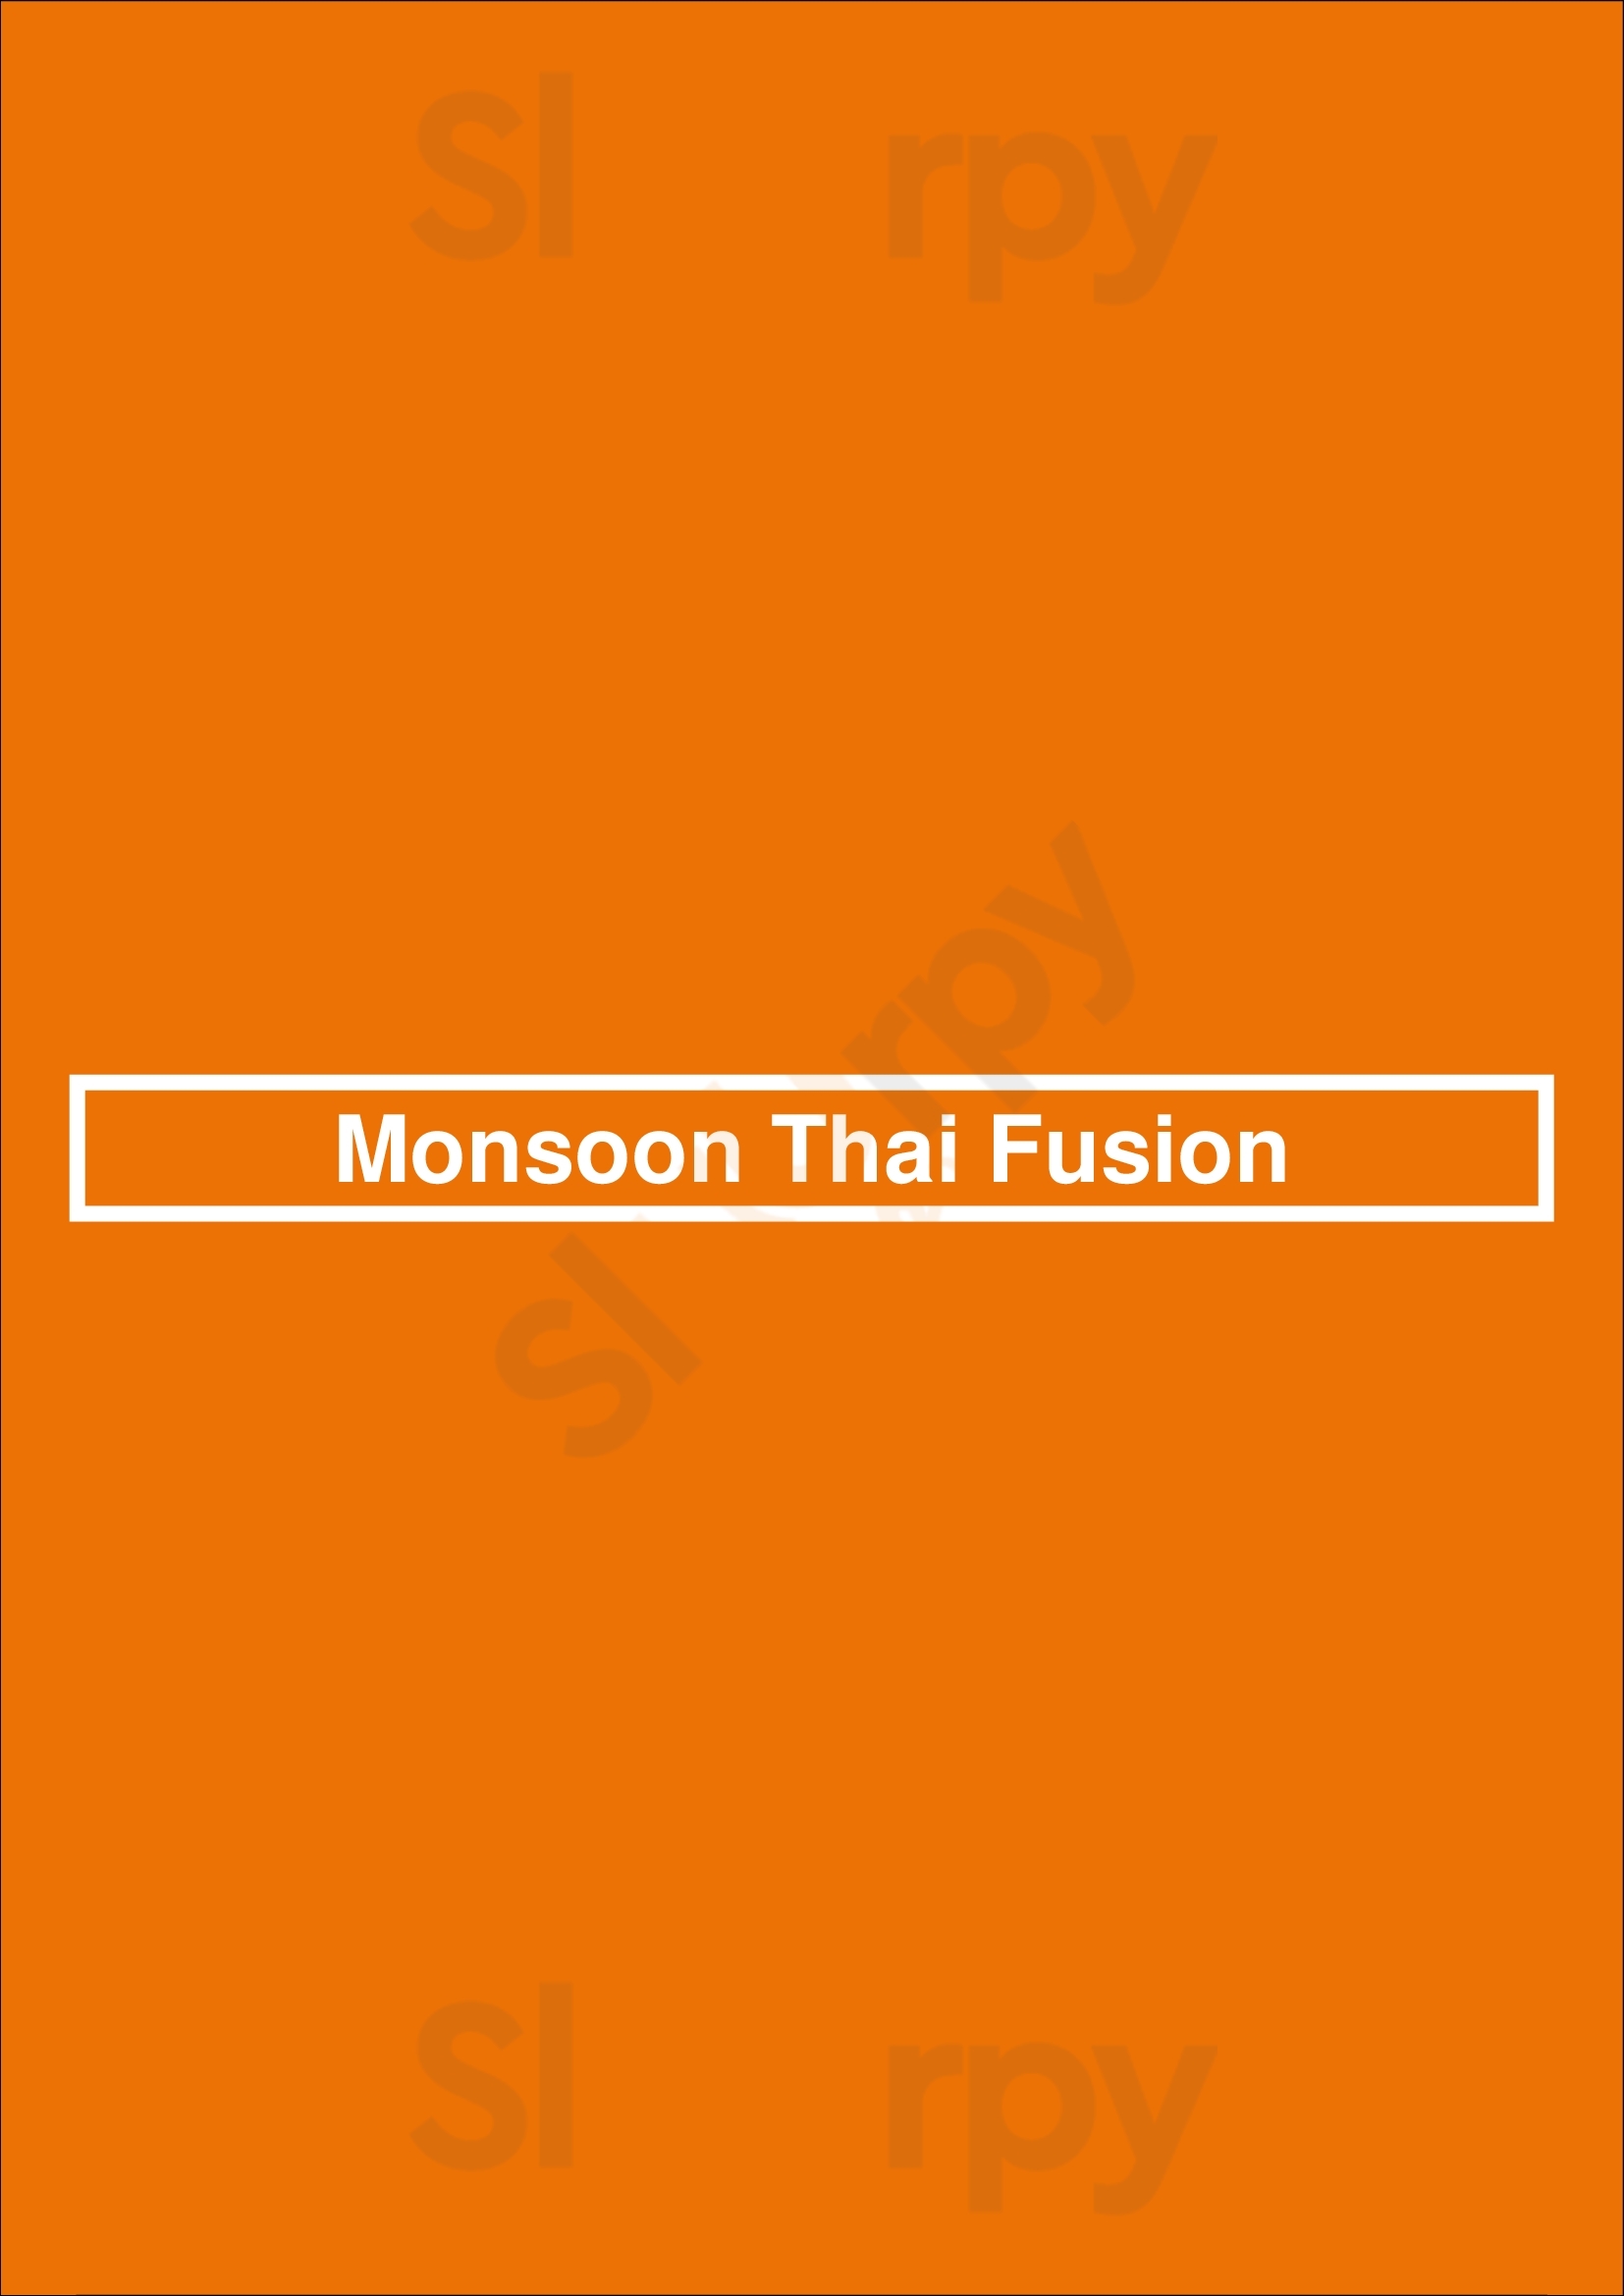 Monsoon Thai Fusion Hobart Menu - 1